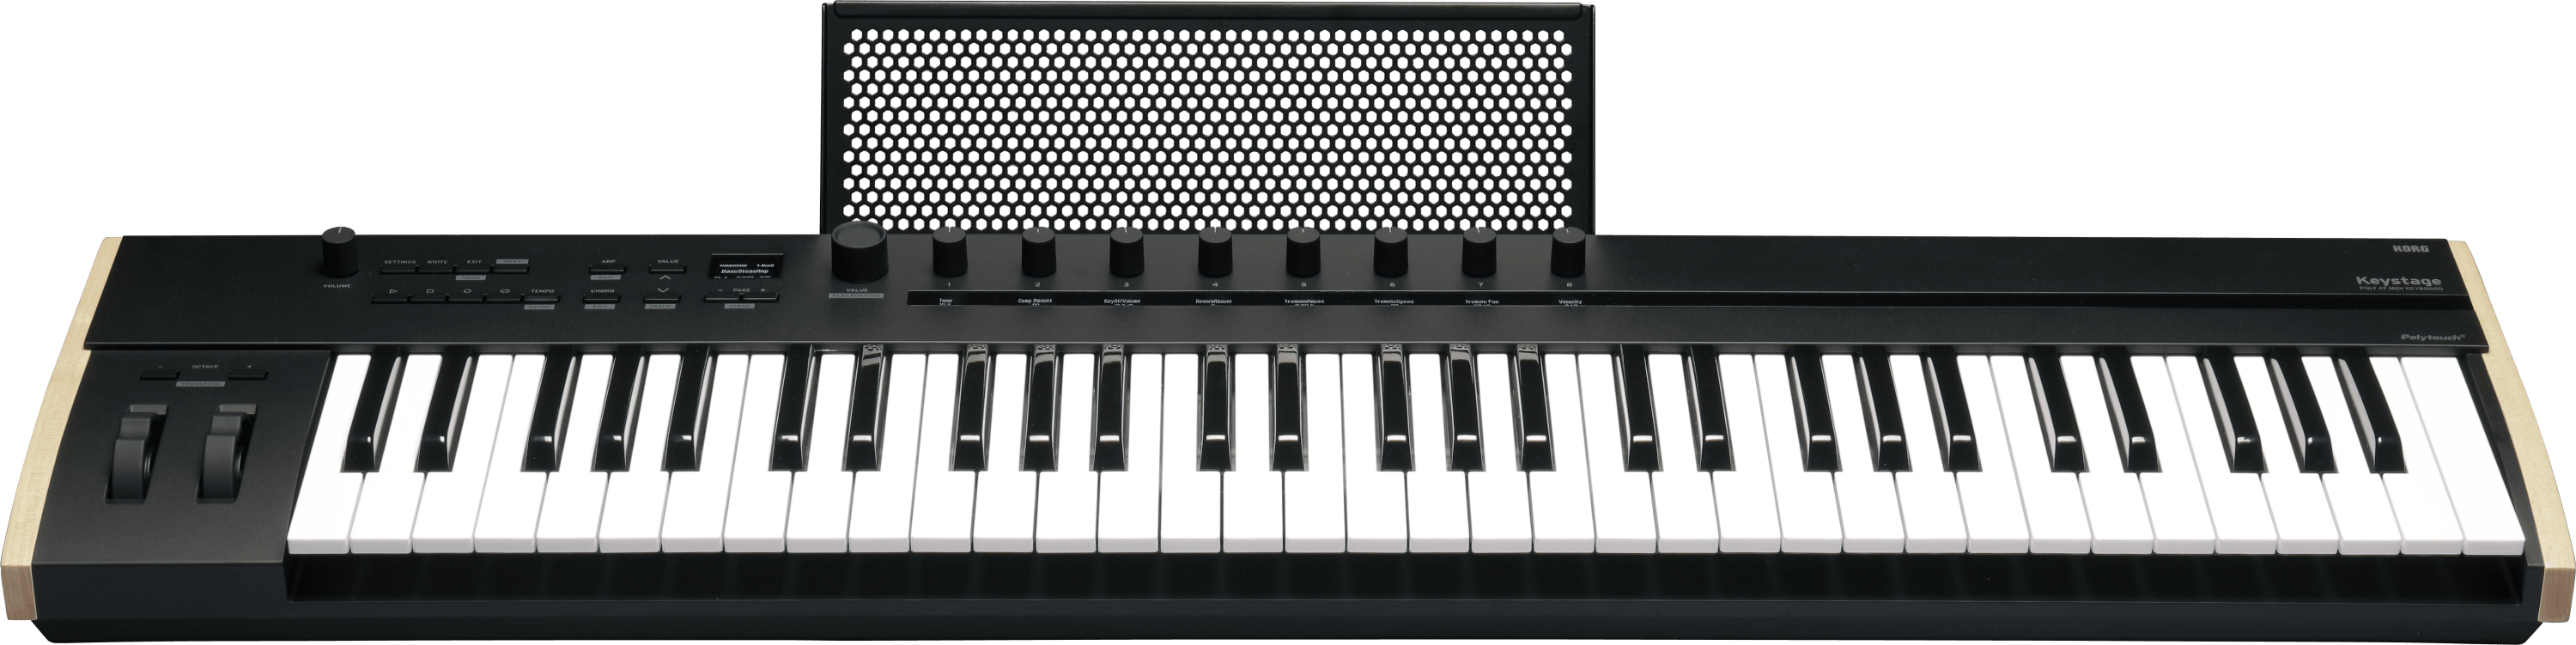 Korg Keyboards & MIDI